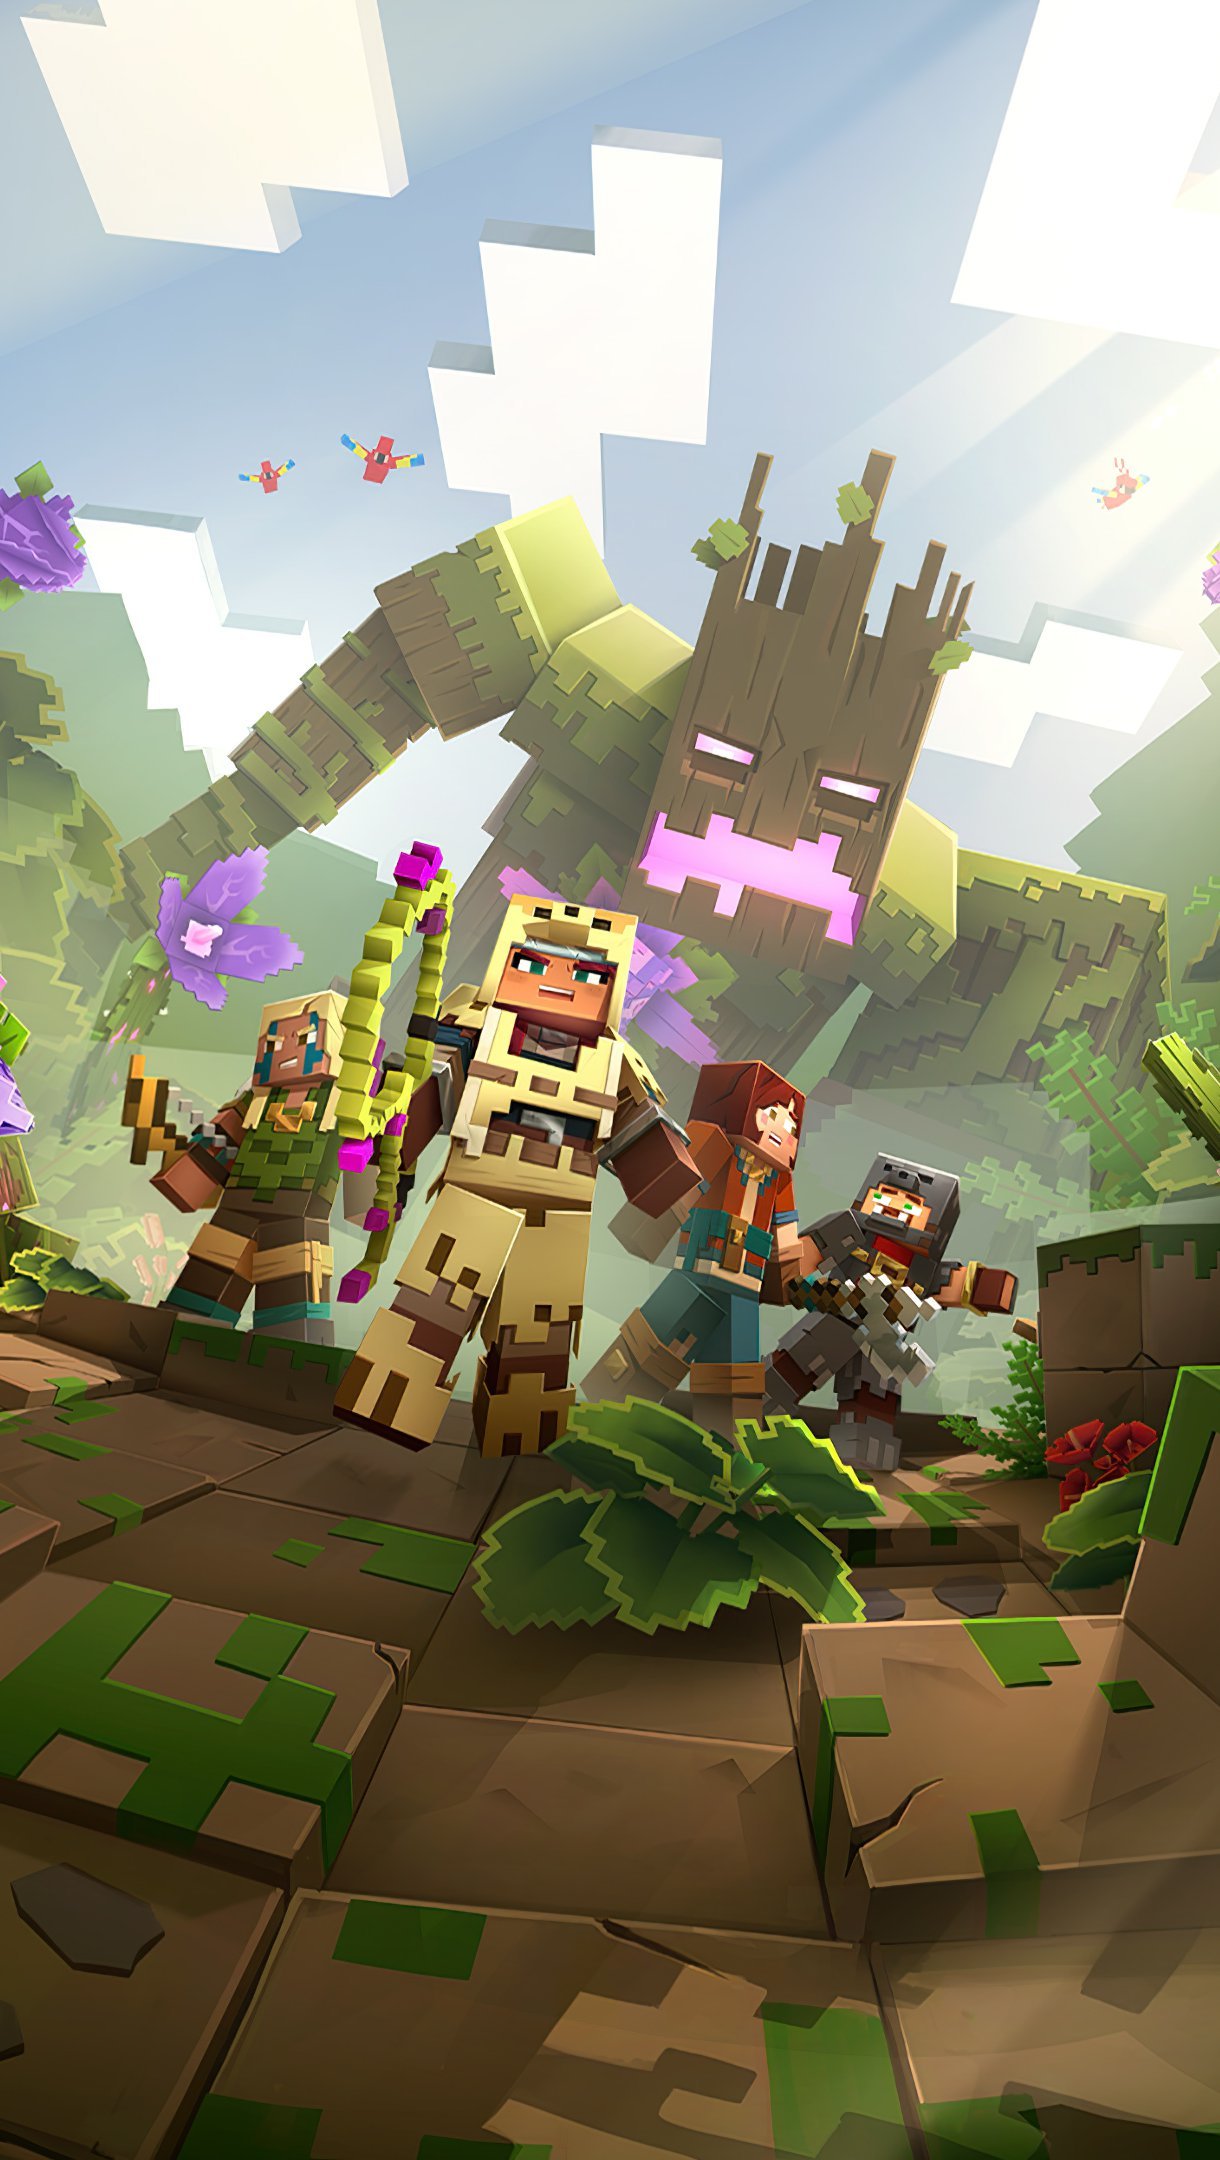 Fondos de pantalla Minecraft Dungens Jungle Awaens Hero Vertical